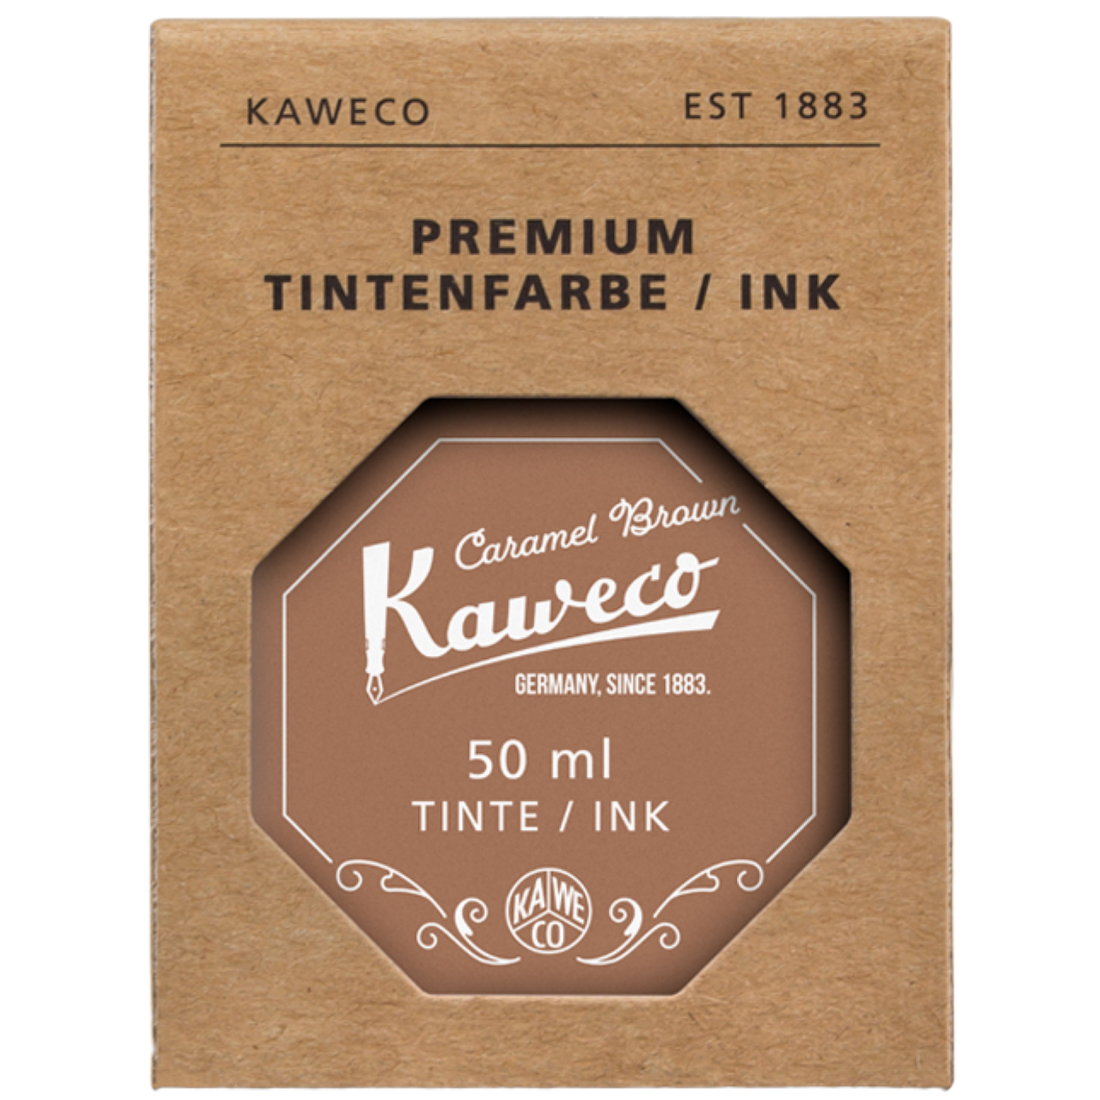 Tinta Permanente Premium kaweco